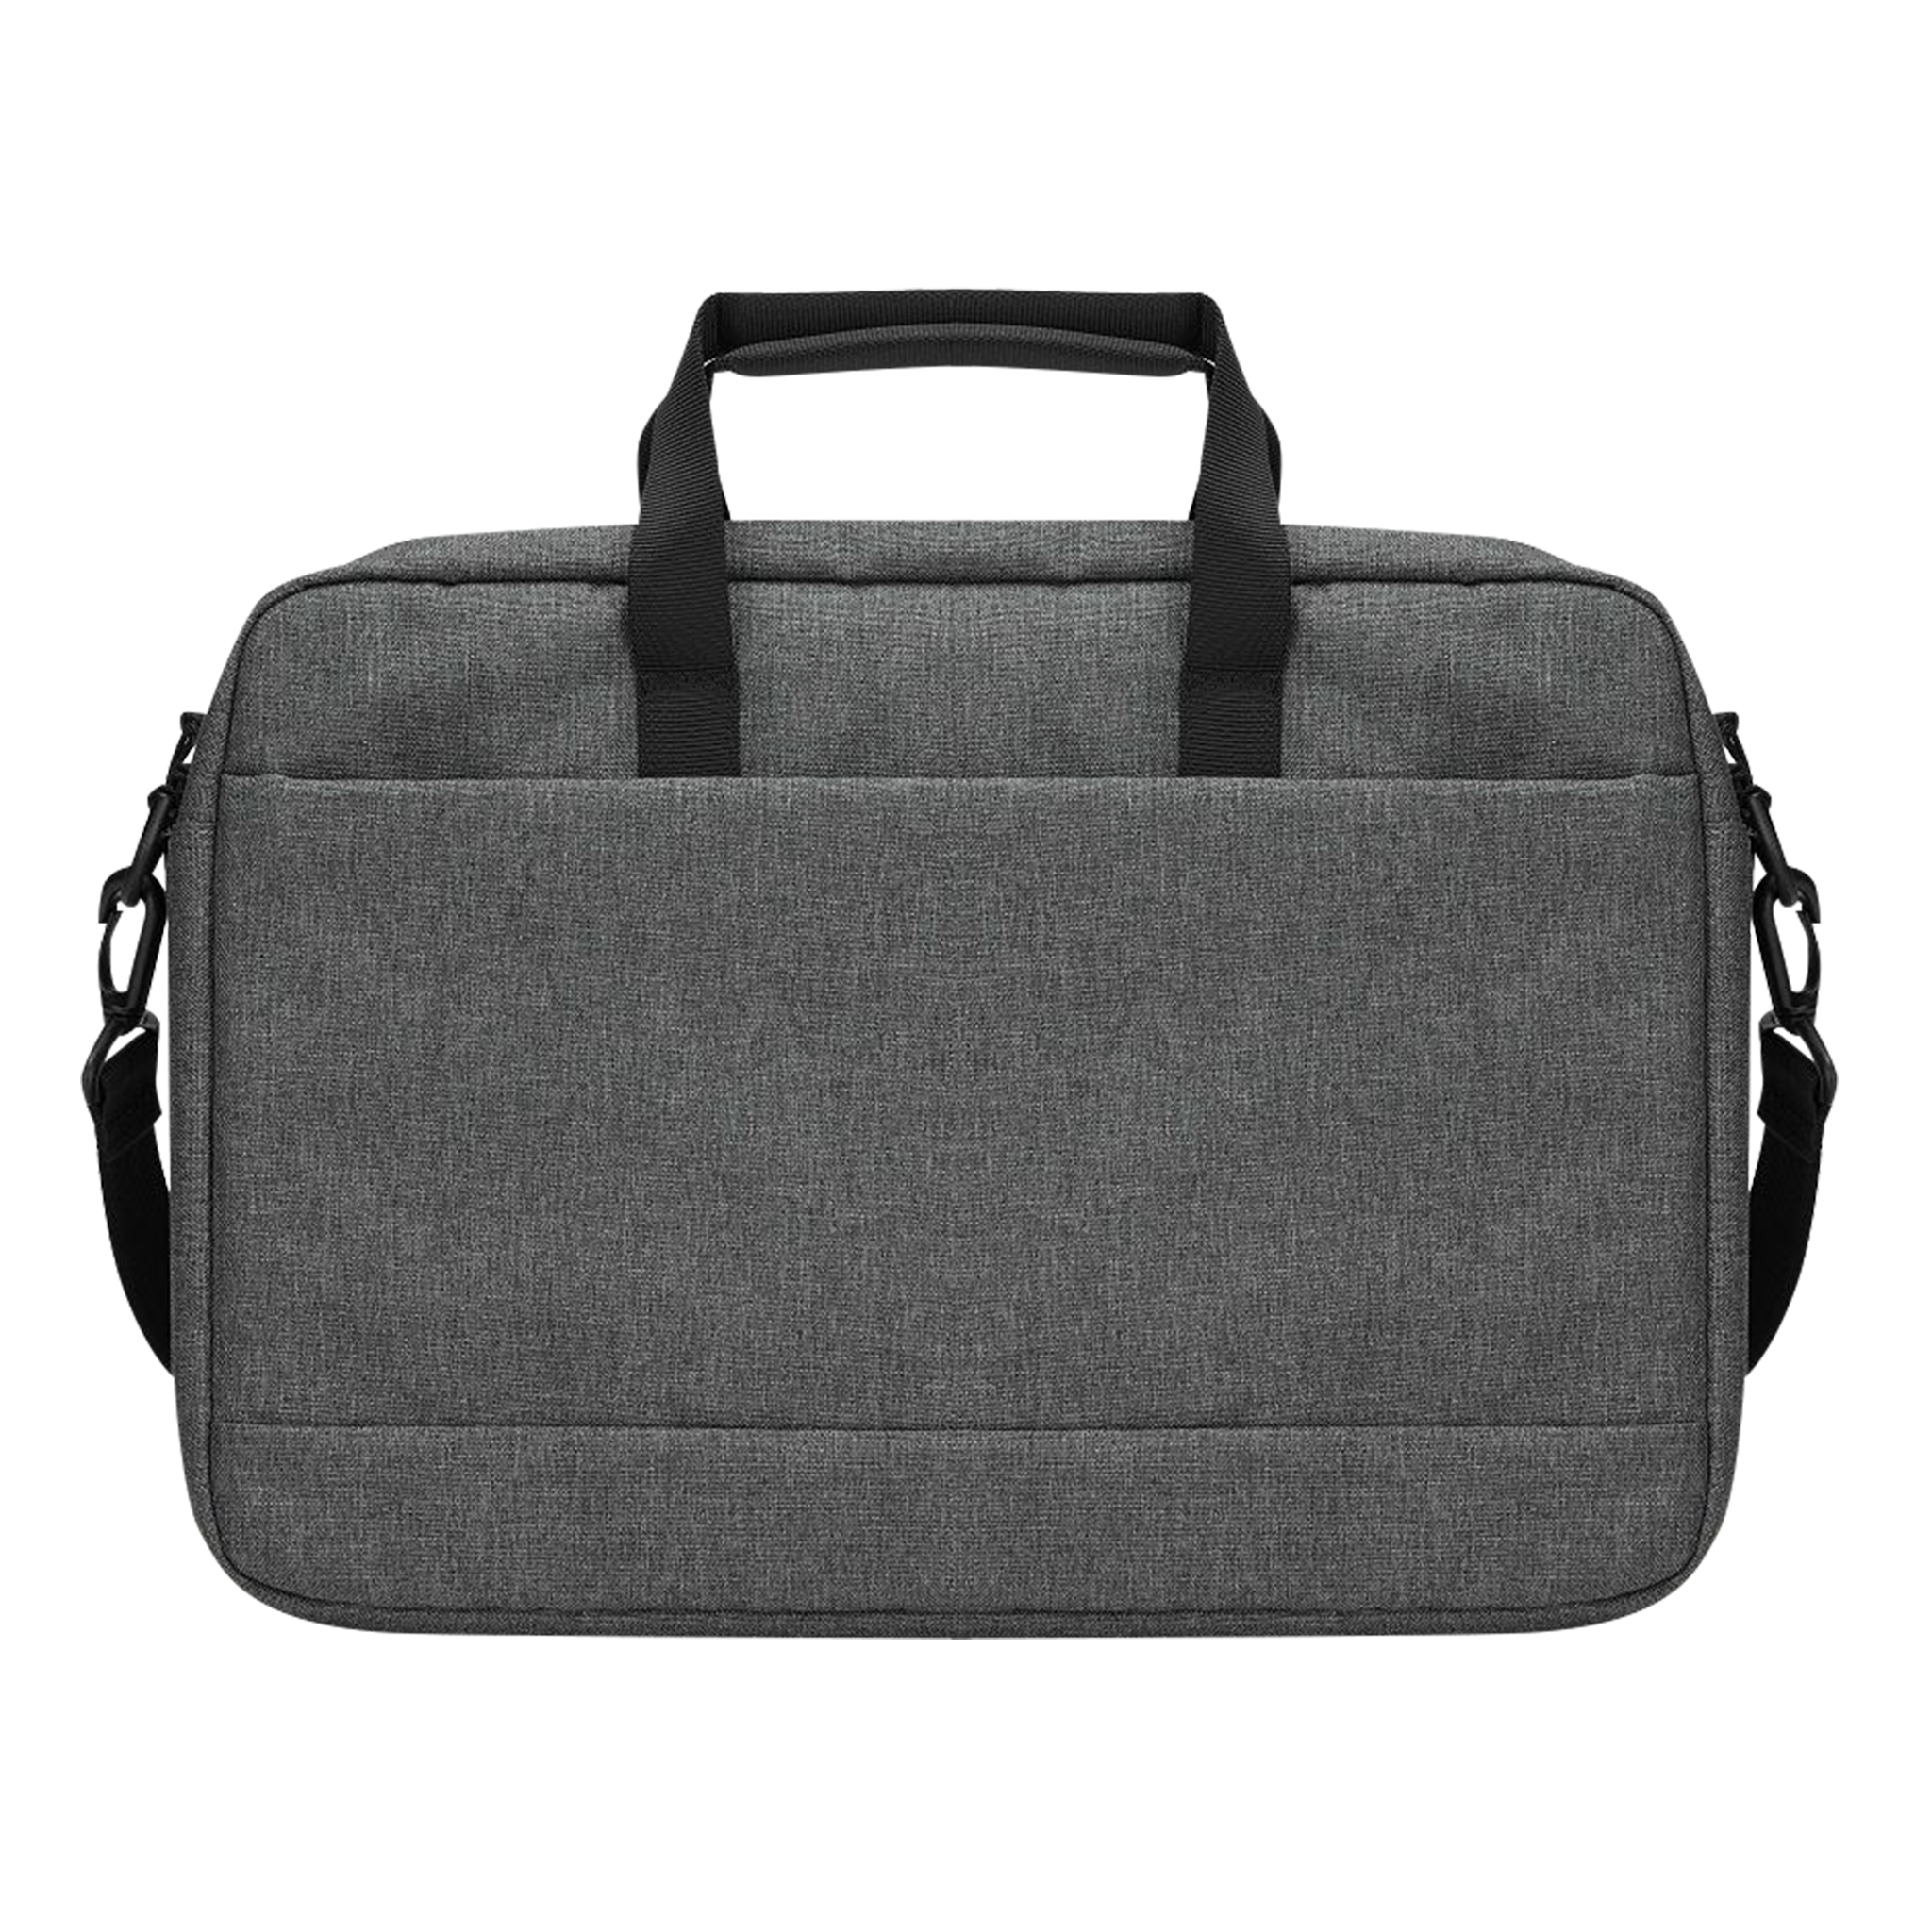 Laptop Bag Cognac Braun Shoulder Bag for Acer Swift 3 | eBay